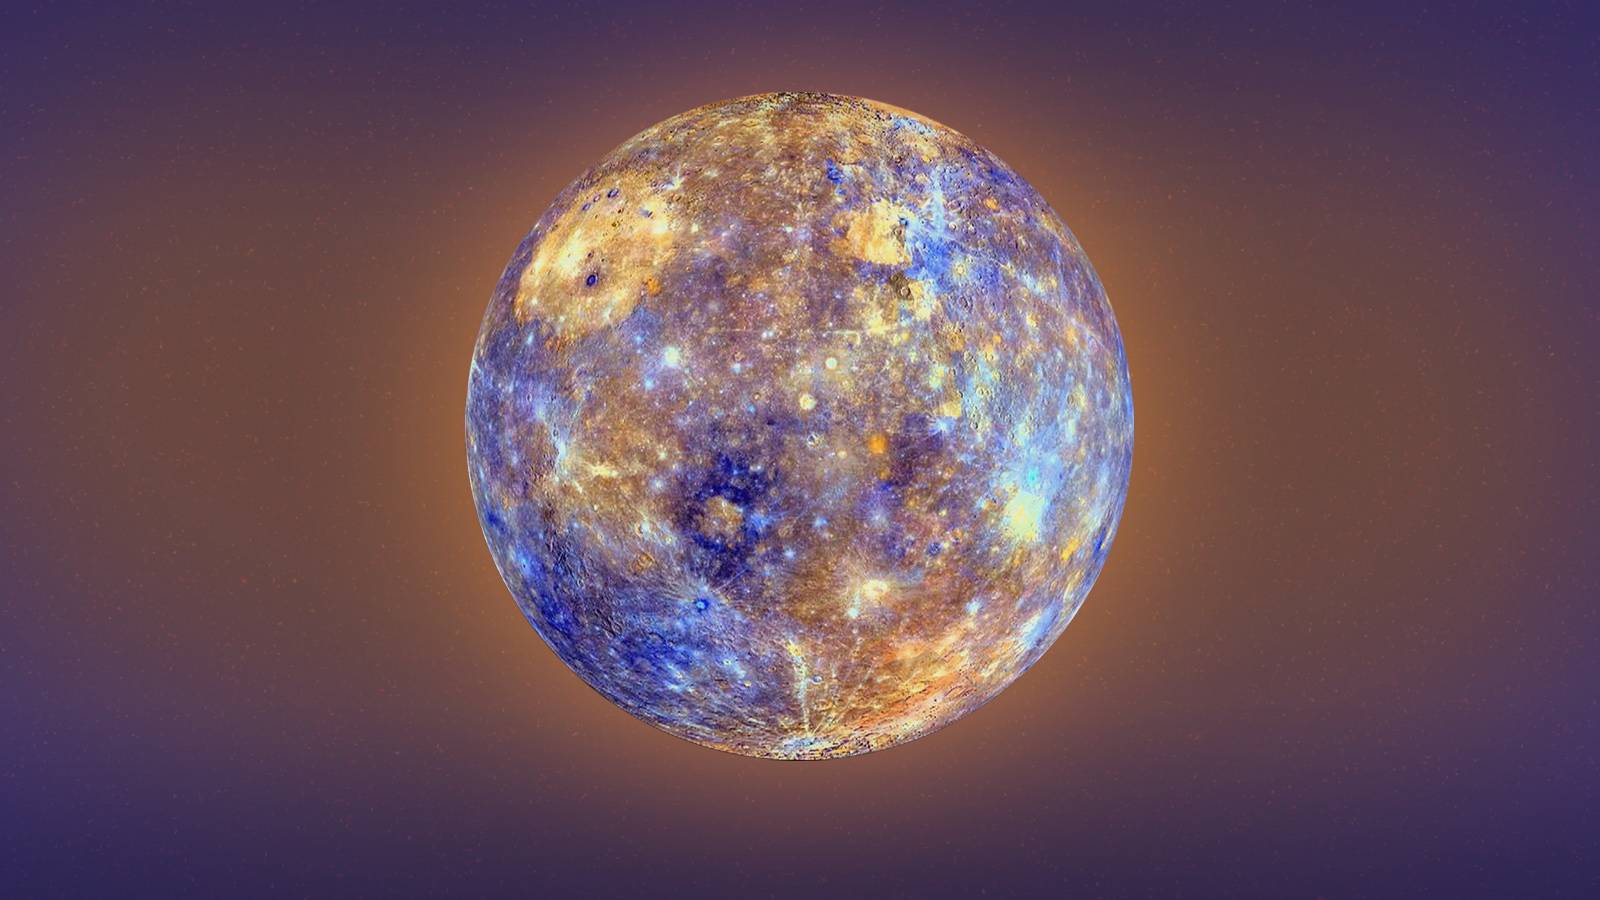 Einschlag auf den Planeten Merkur